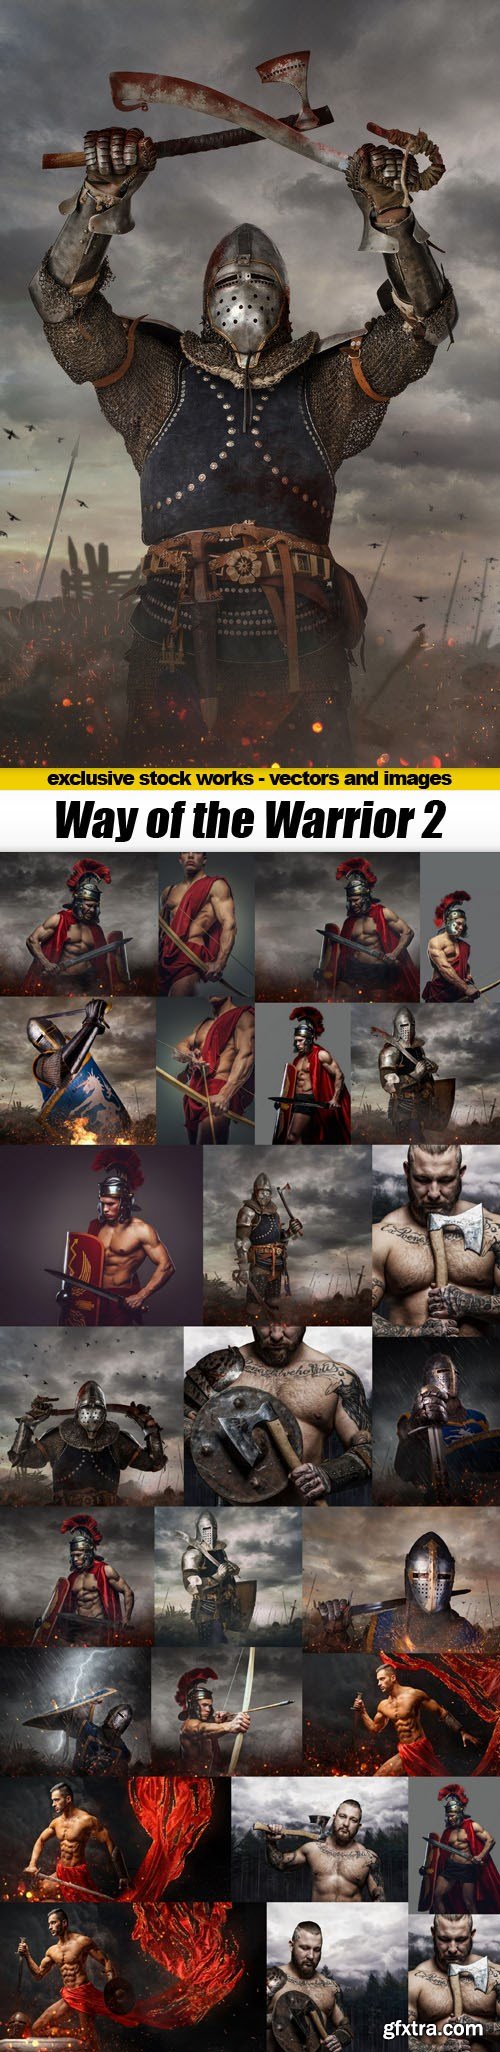 Way of the Warrior 2 - 27xUHQ JPEG